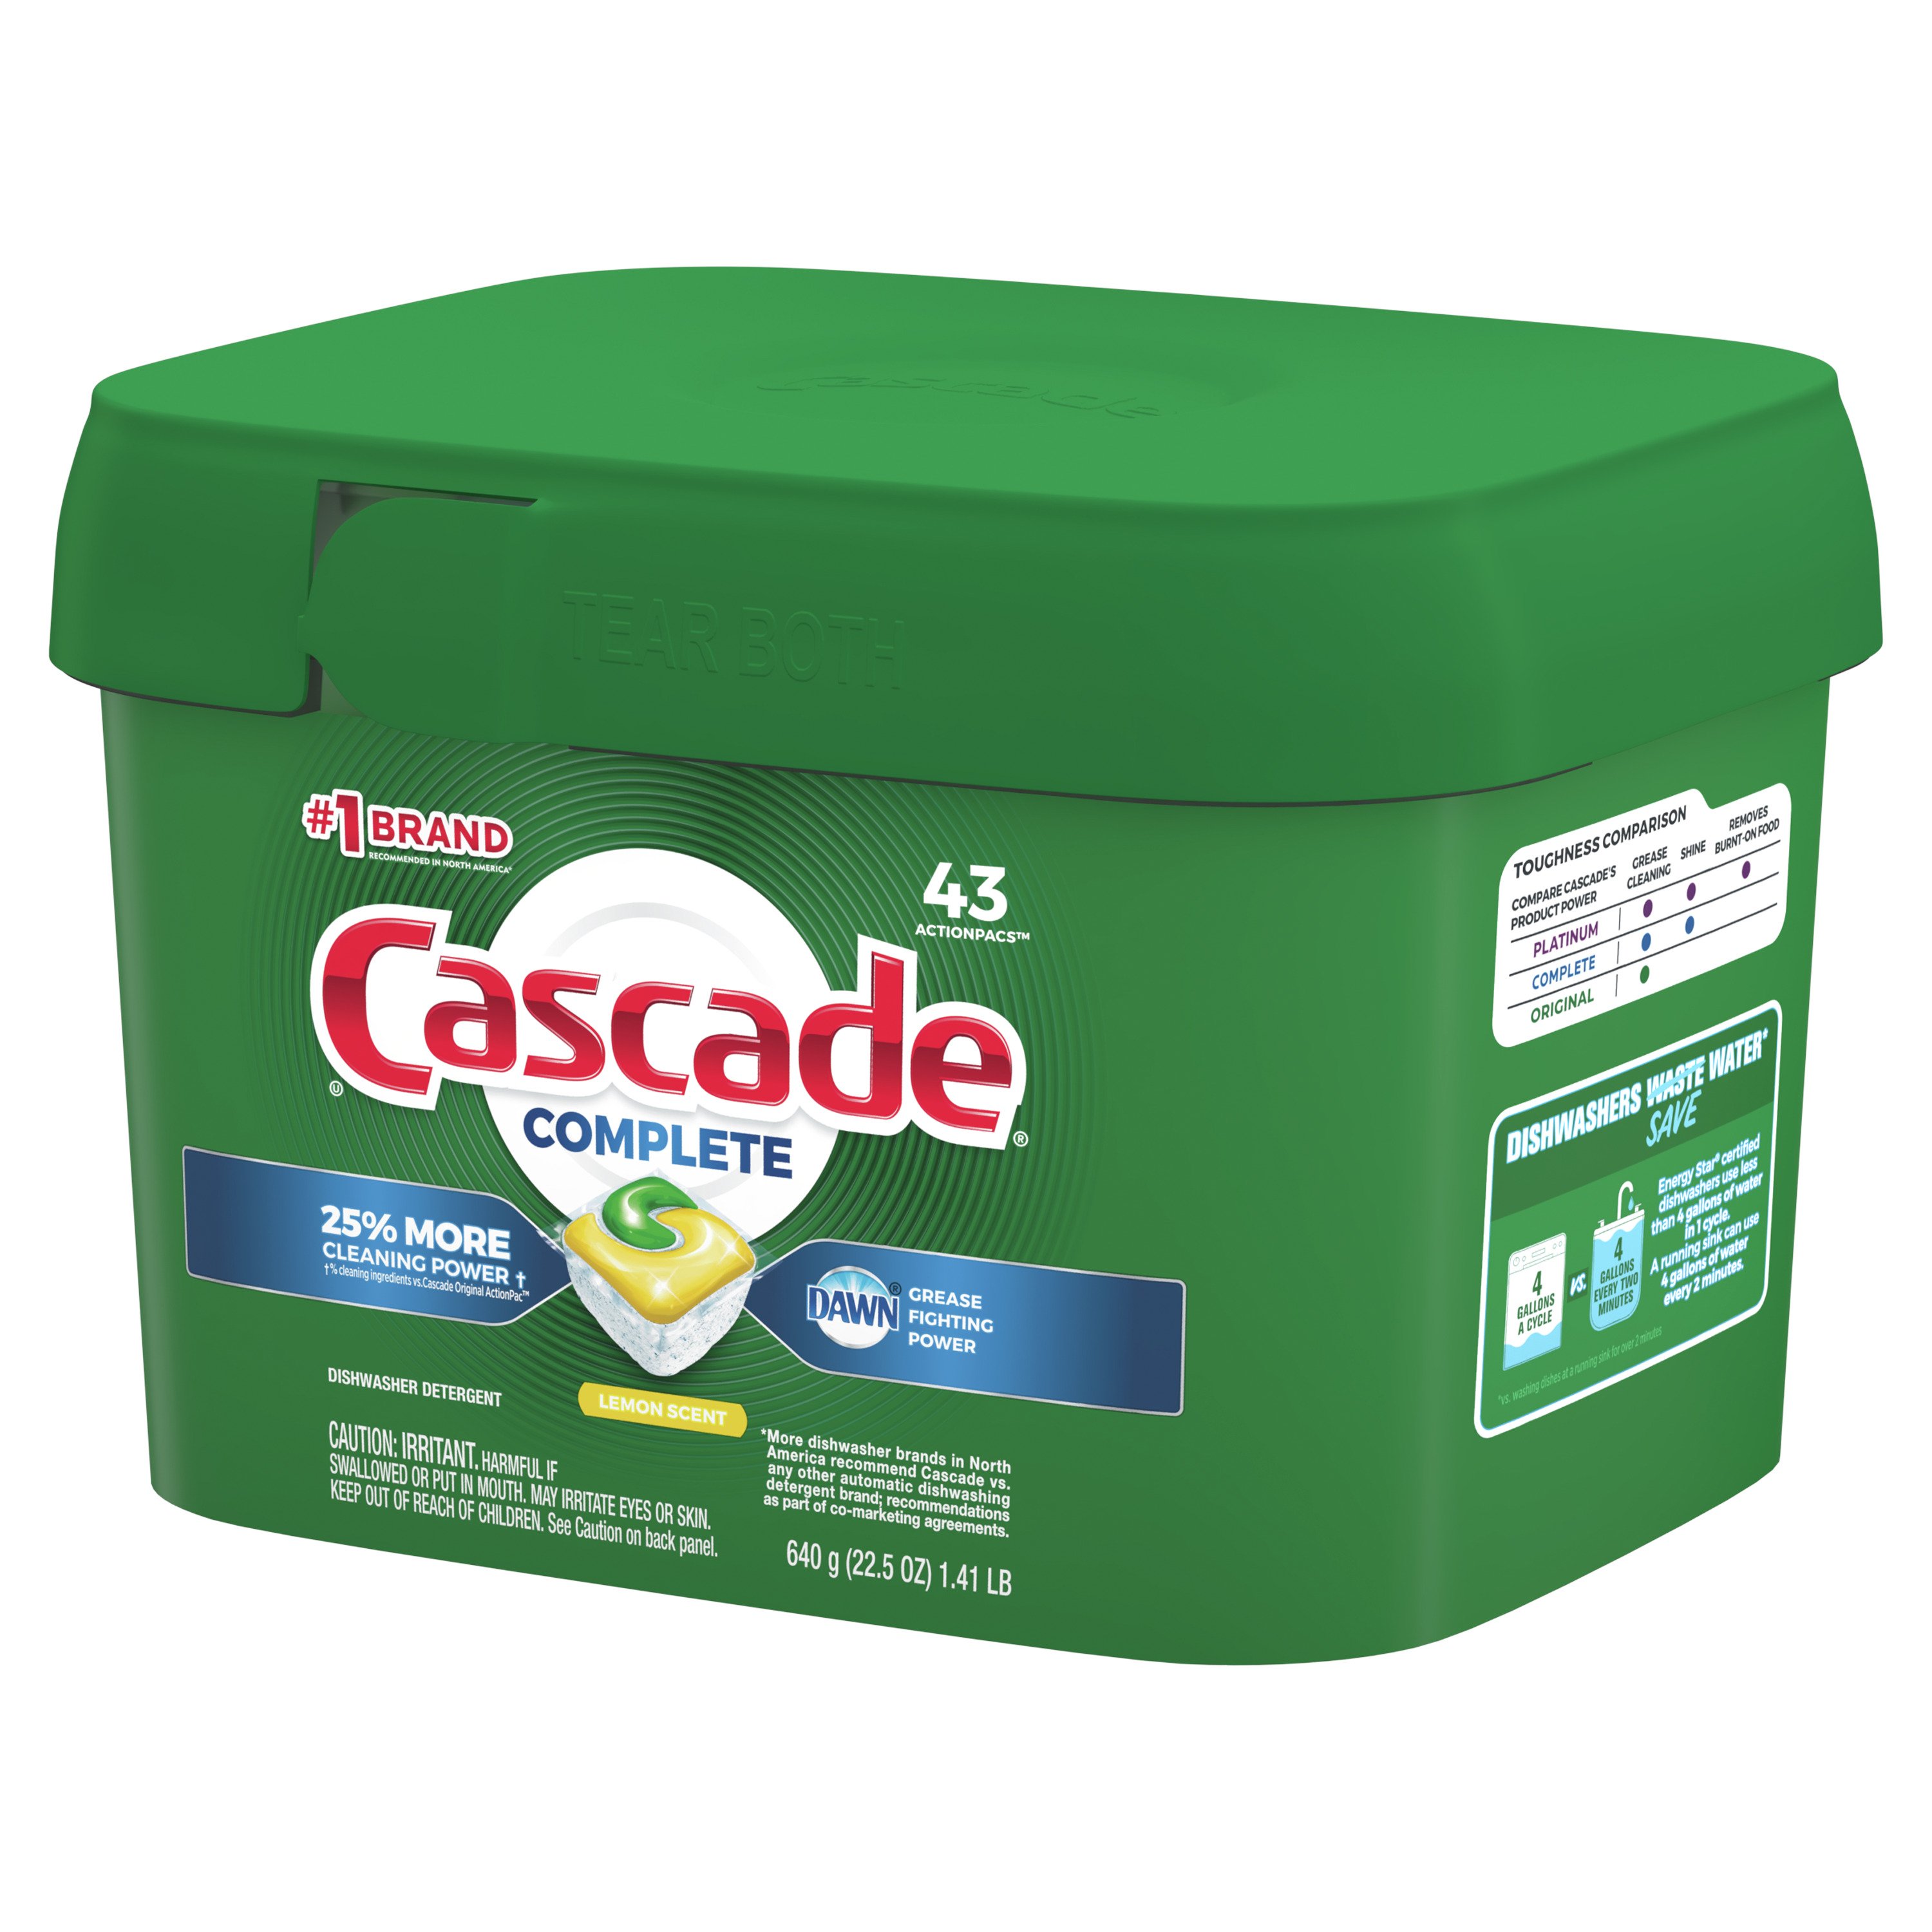 Cascade Platinum Fresh Scent Dishwasher Detergent ActionPacs + Oxi - Shop  Dish Soap & Detergent at H-E-B